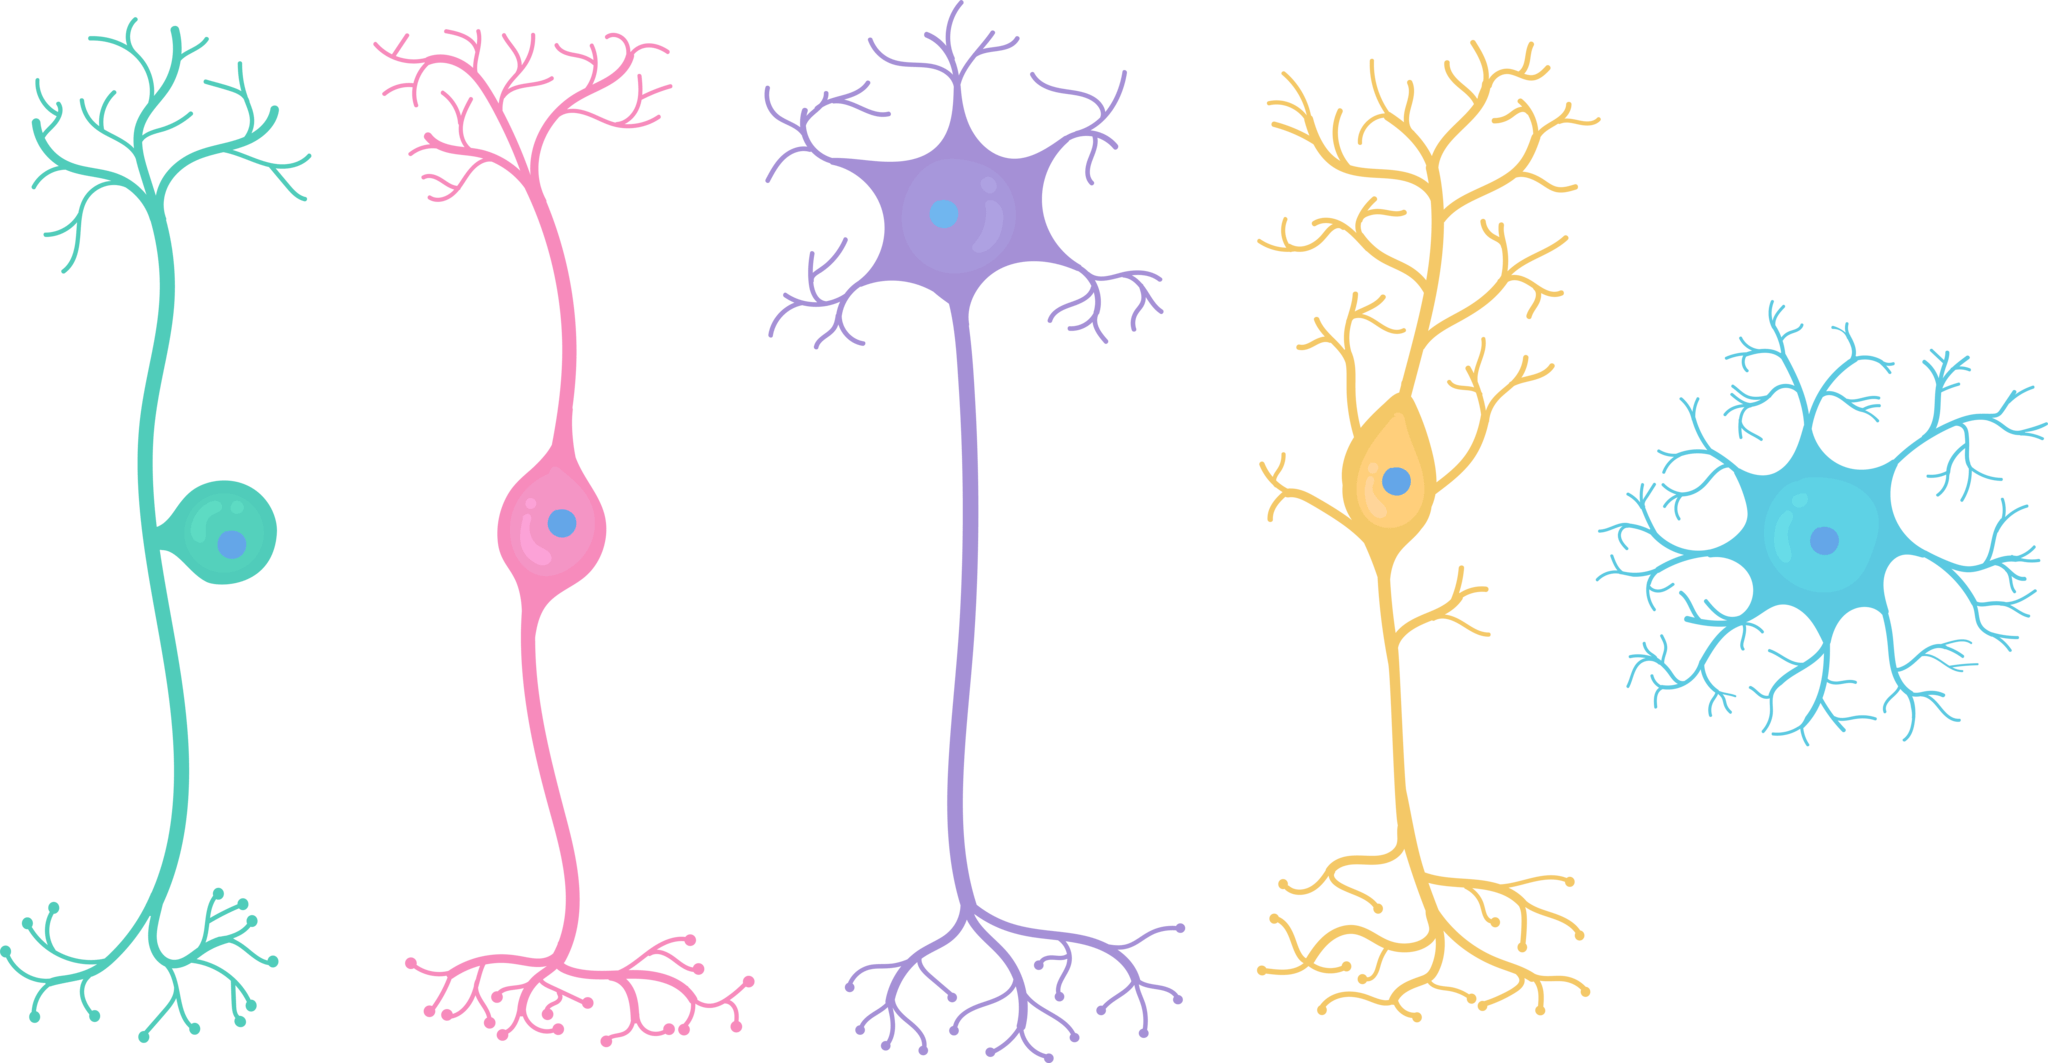 神経細胞の基本的な形